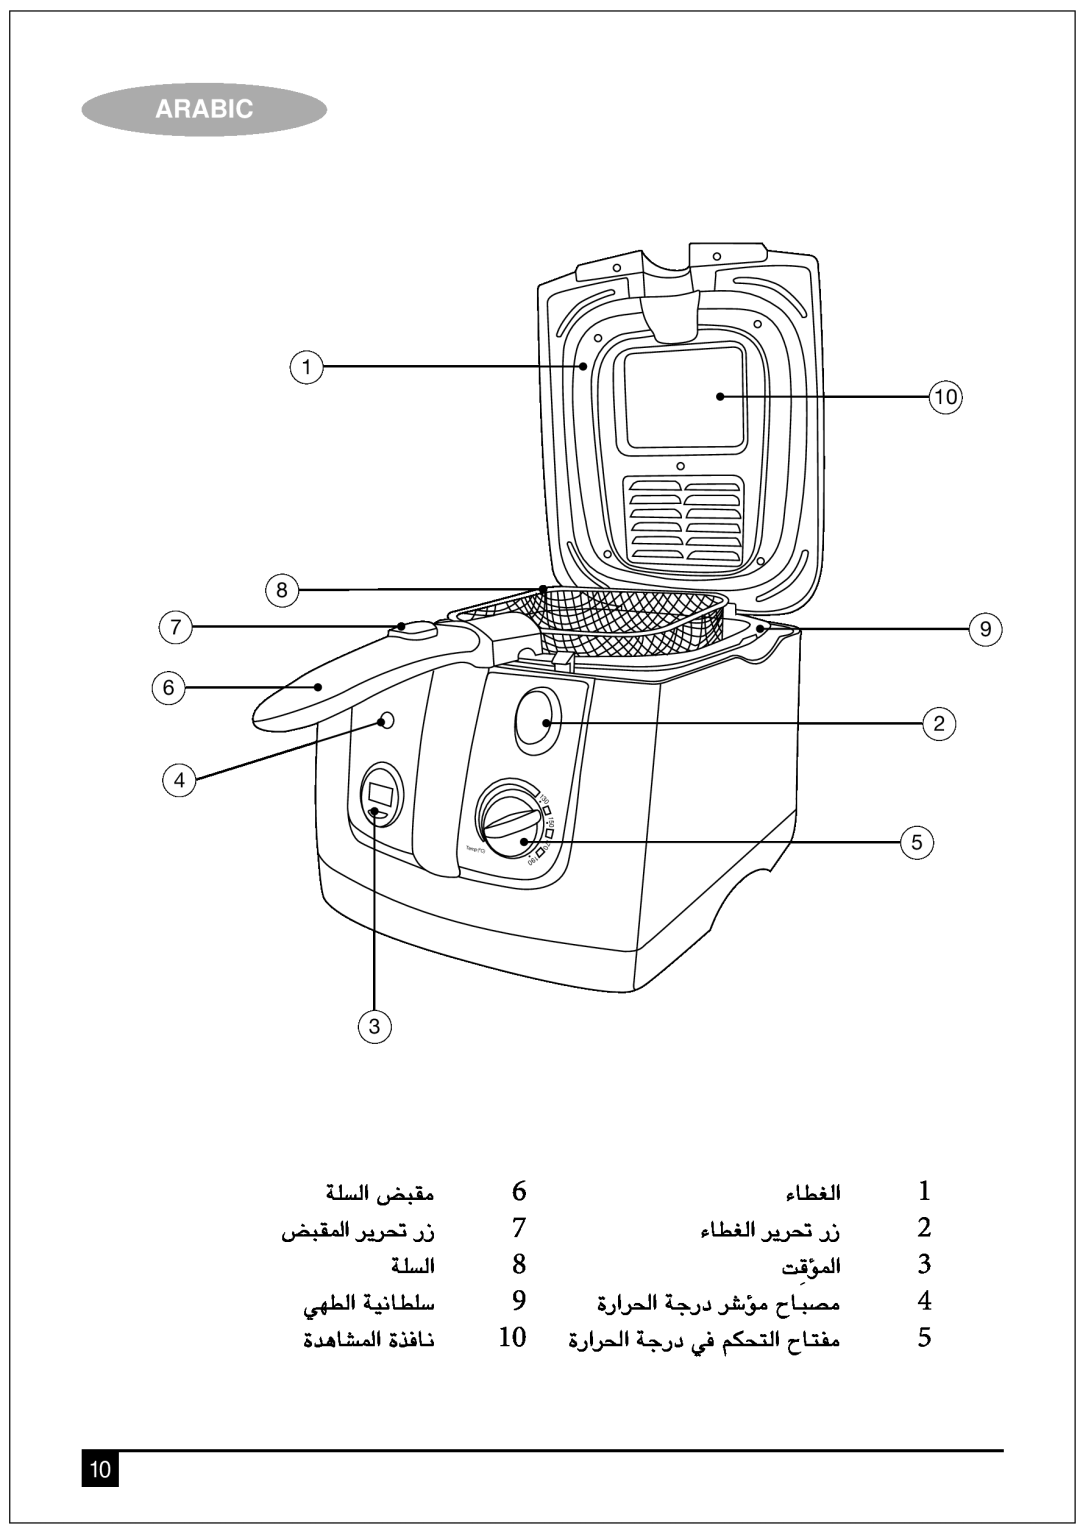 Black & Decker EF2550 manual á∏ùdG ¢†Ñ≤e, ¢†Ñ≤ŸG ôjô- QR, AÉ£¨dG ôjô- QR, âbDpƒŸG, »¡£dG á«fÉ£∏S, IógÉûŸG IòaÉf, Arabic 